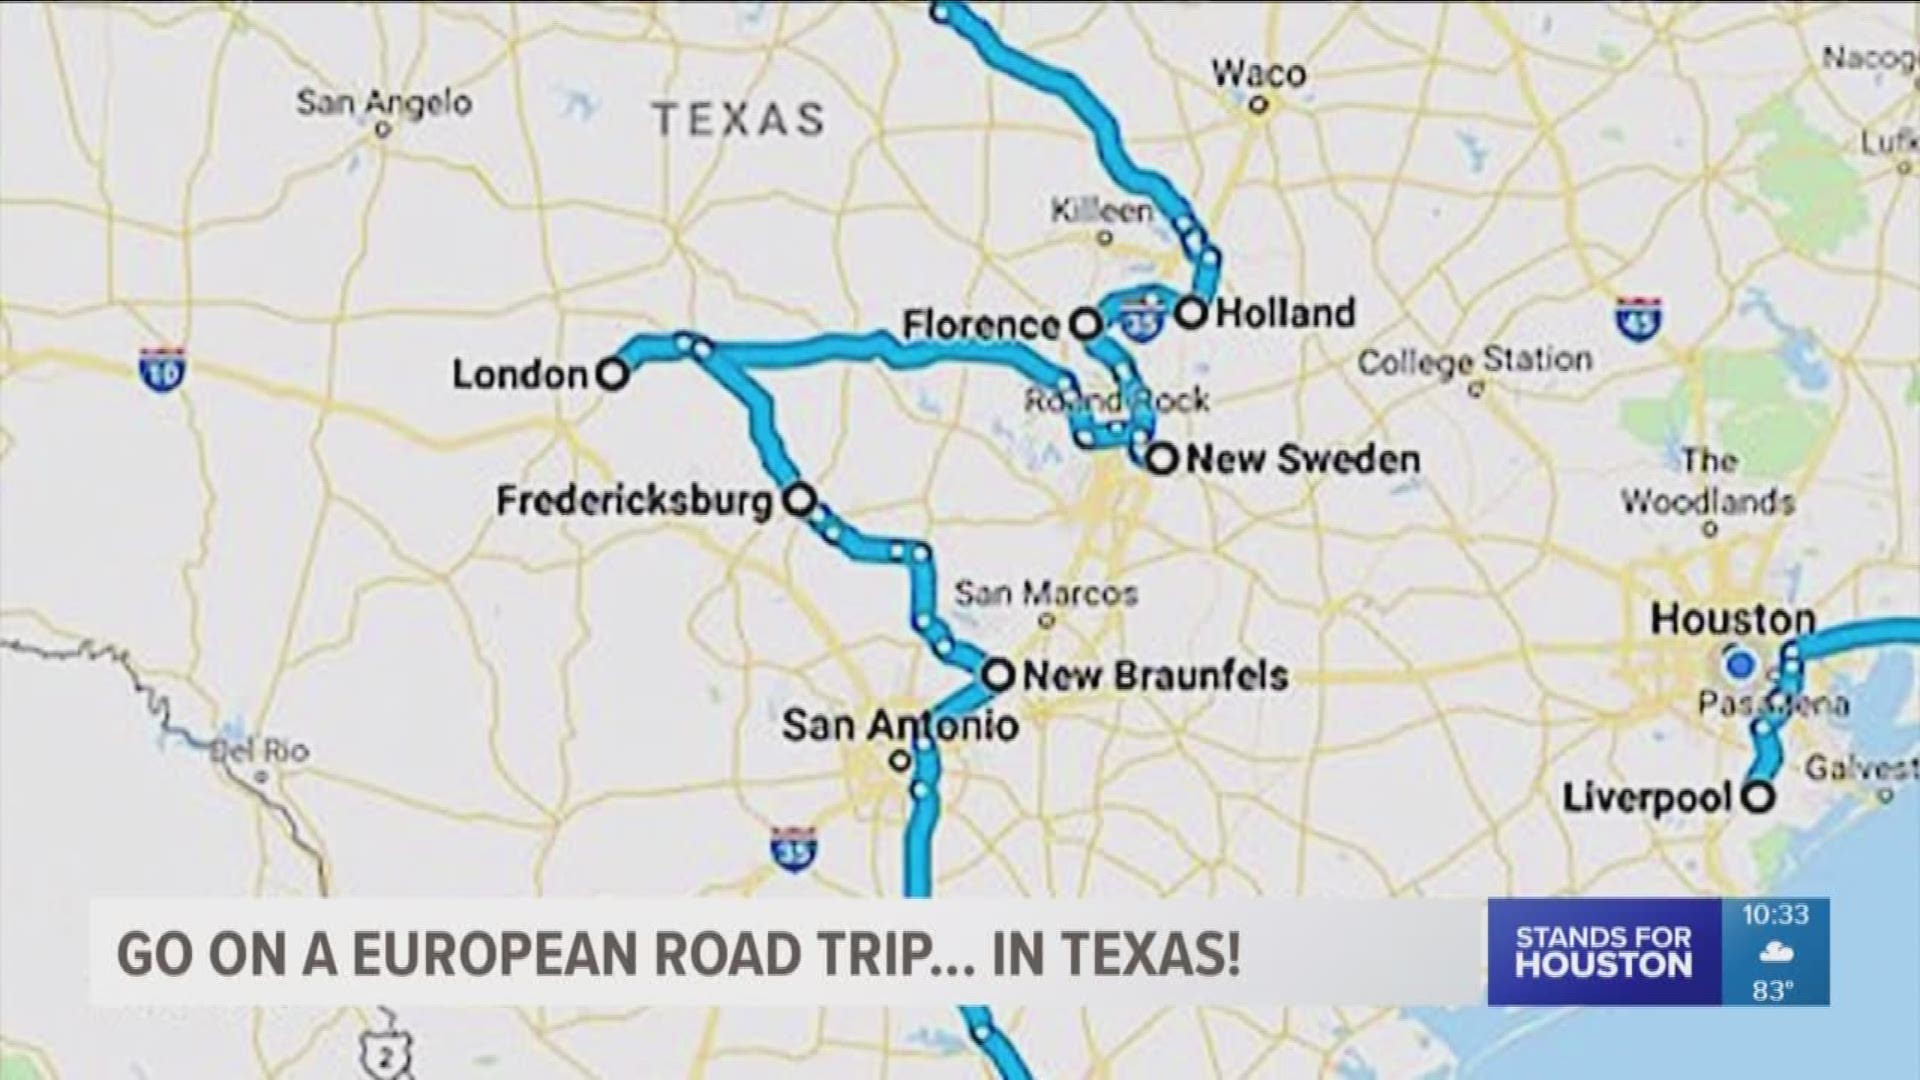 Go on a European road trip...in Texas!